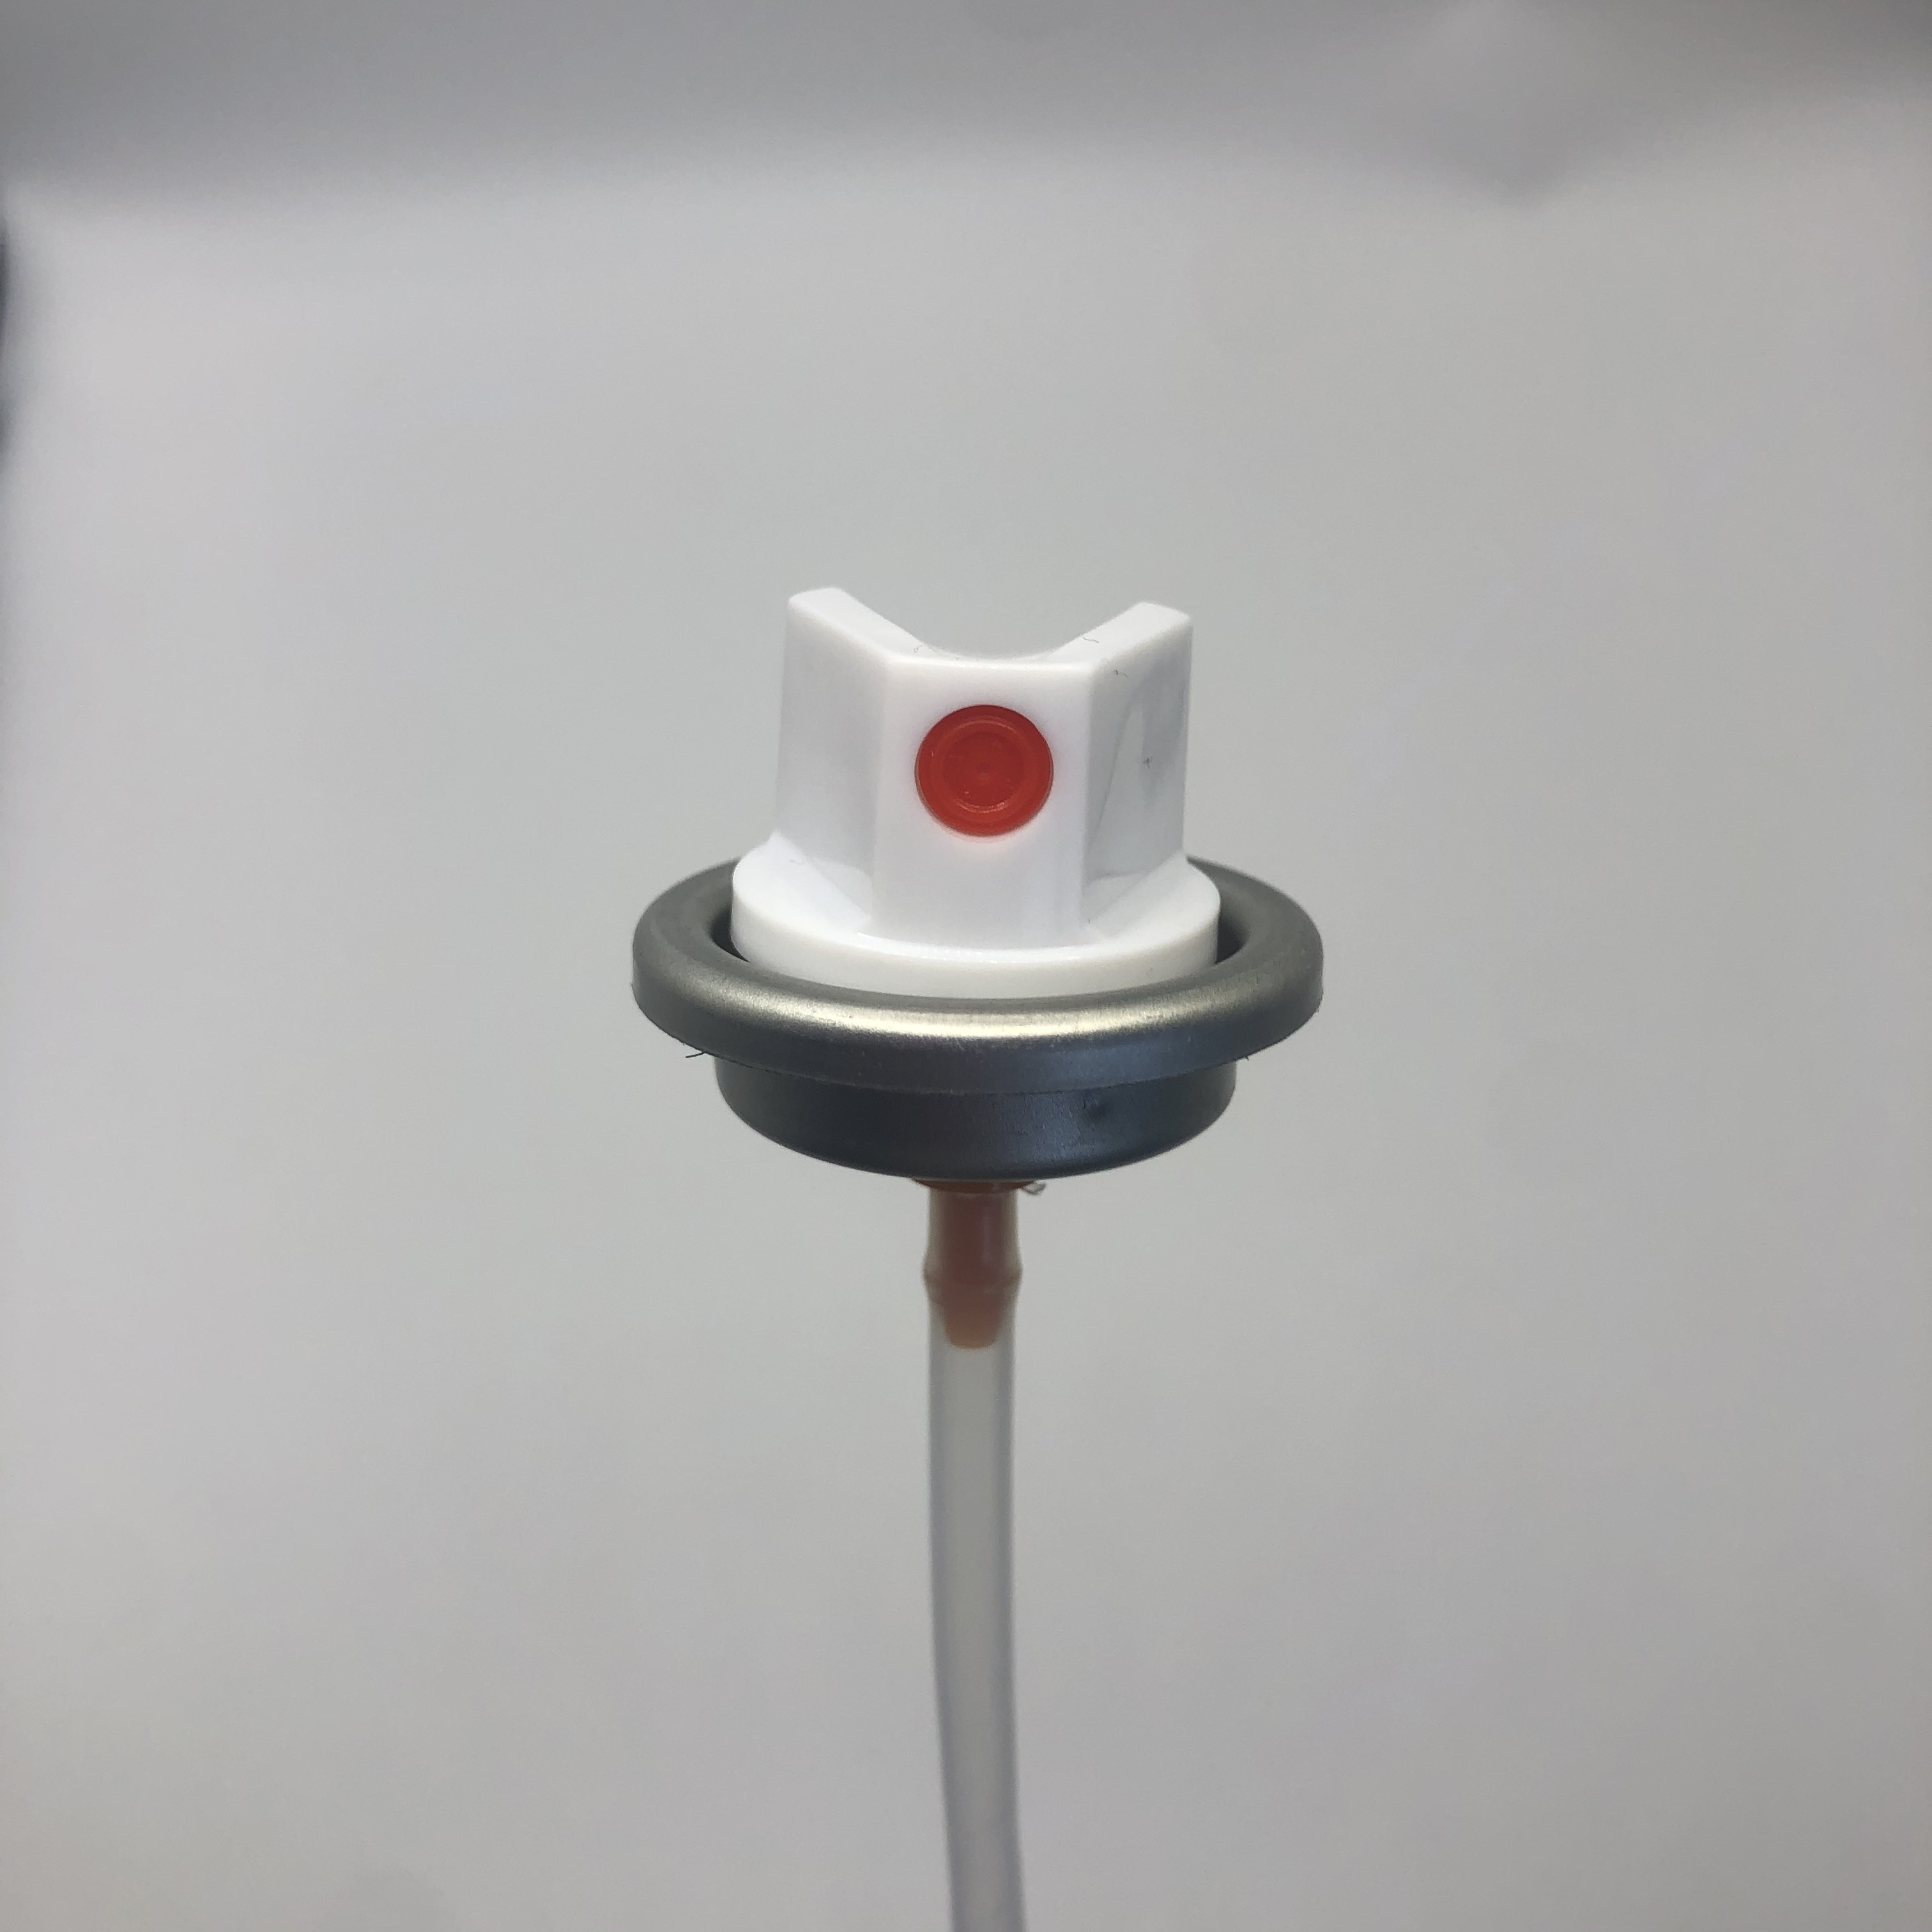 Компактный клапан распыления краски для портативных применений Легкий алюминиевый клапан с регулируемой скоростью потока и эргономичной конструкцией